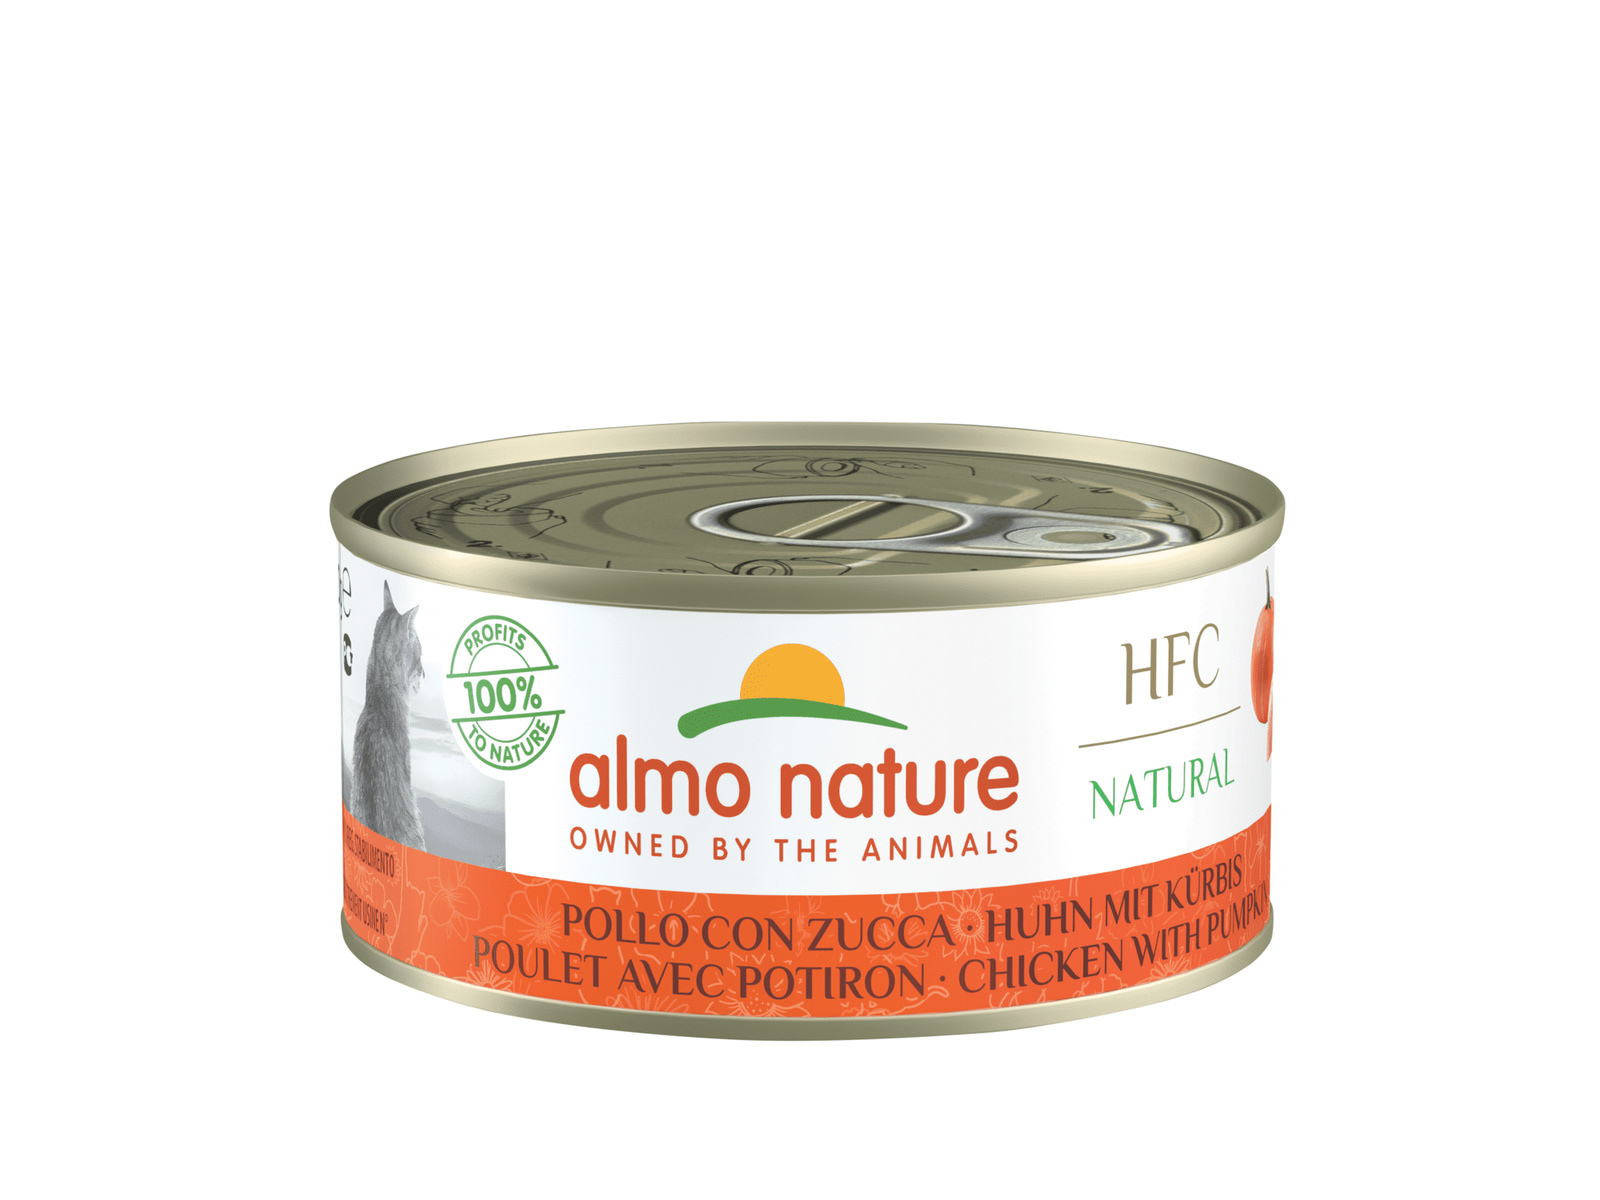 Almo Nature консервы для кошек, с курицей и тыквой, 55% мяса (24 шт. по 150 г)